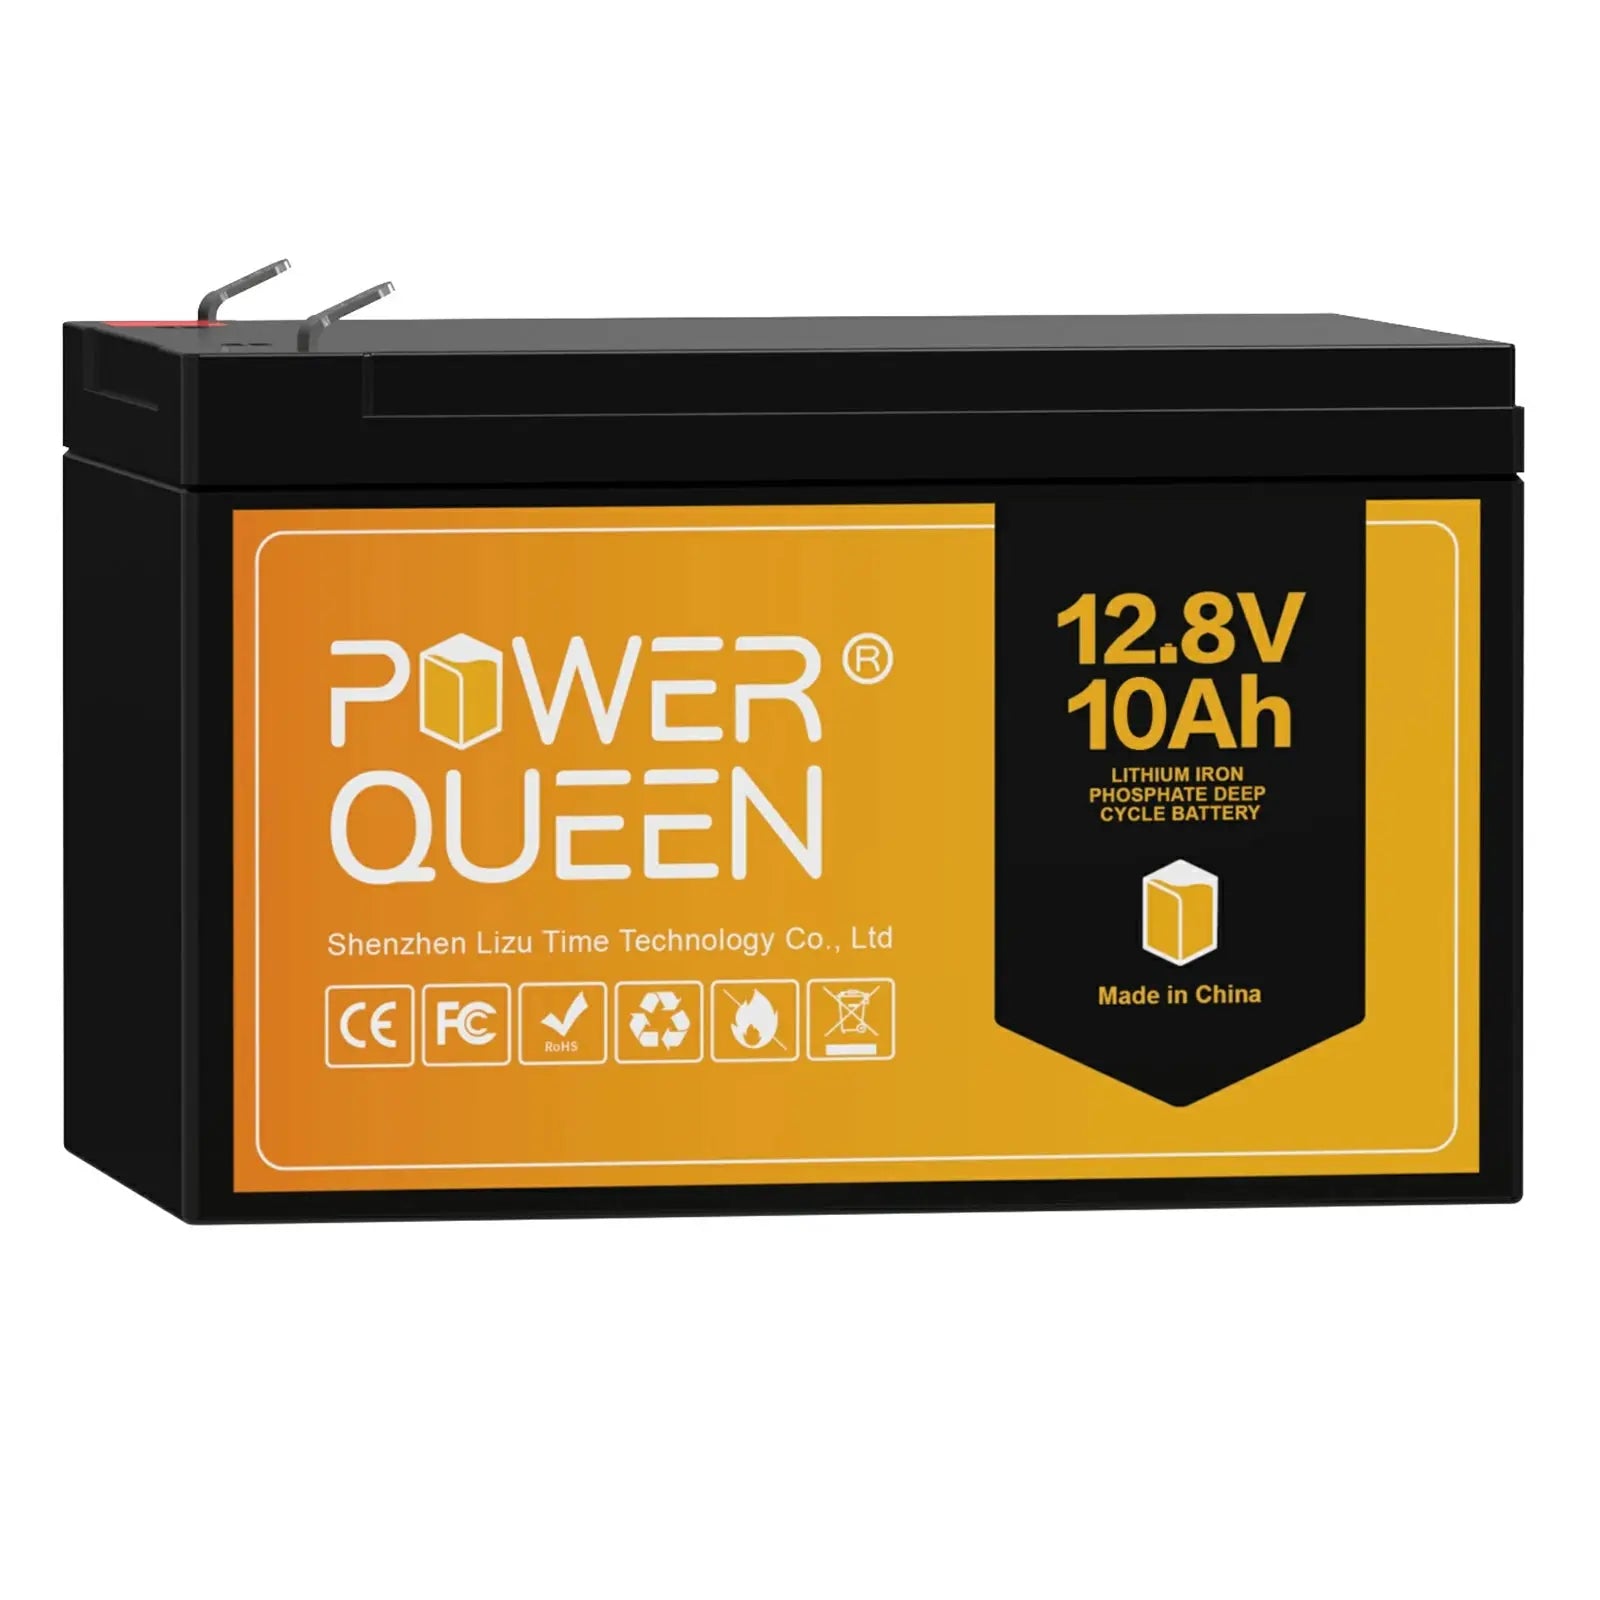 Power Queen 12.8V 10Ah LiFePO4 Battery, Built-IN 10A BMS Power Queen